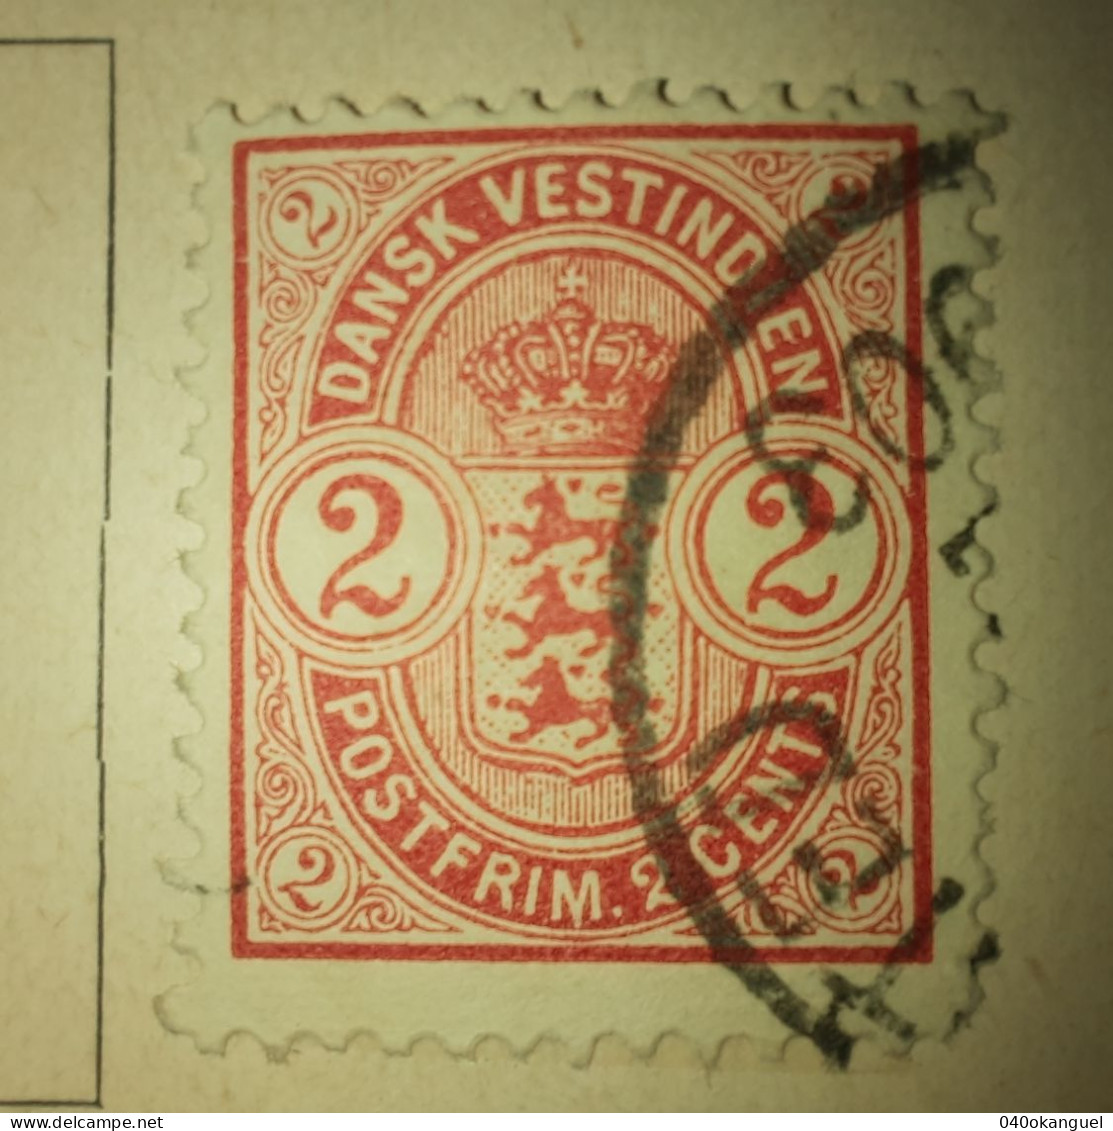 Westindien - Antillen - 1 Marke Von 1900  Gem. Scan - Danemark (Antilles)